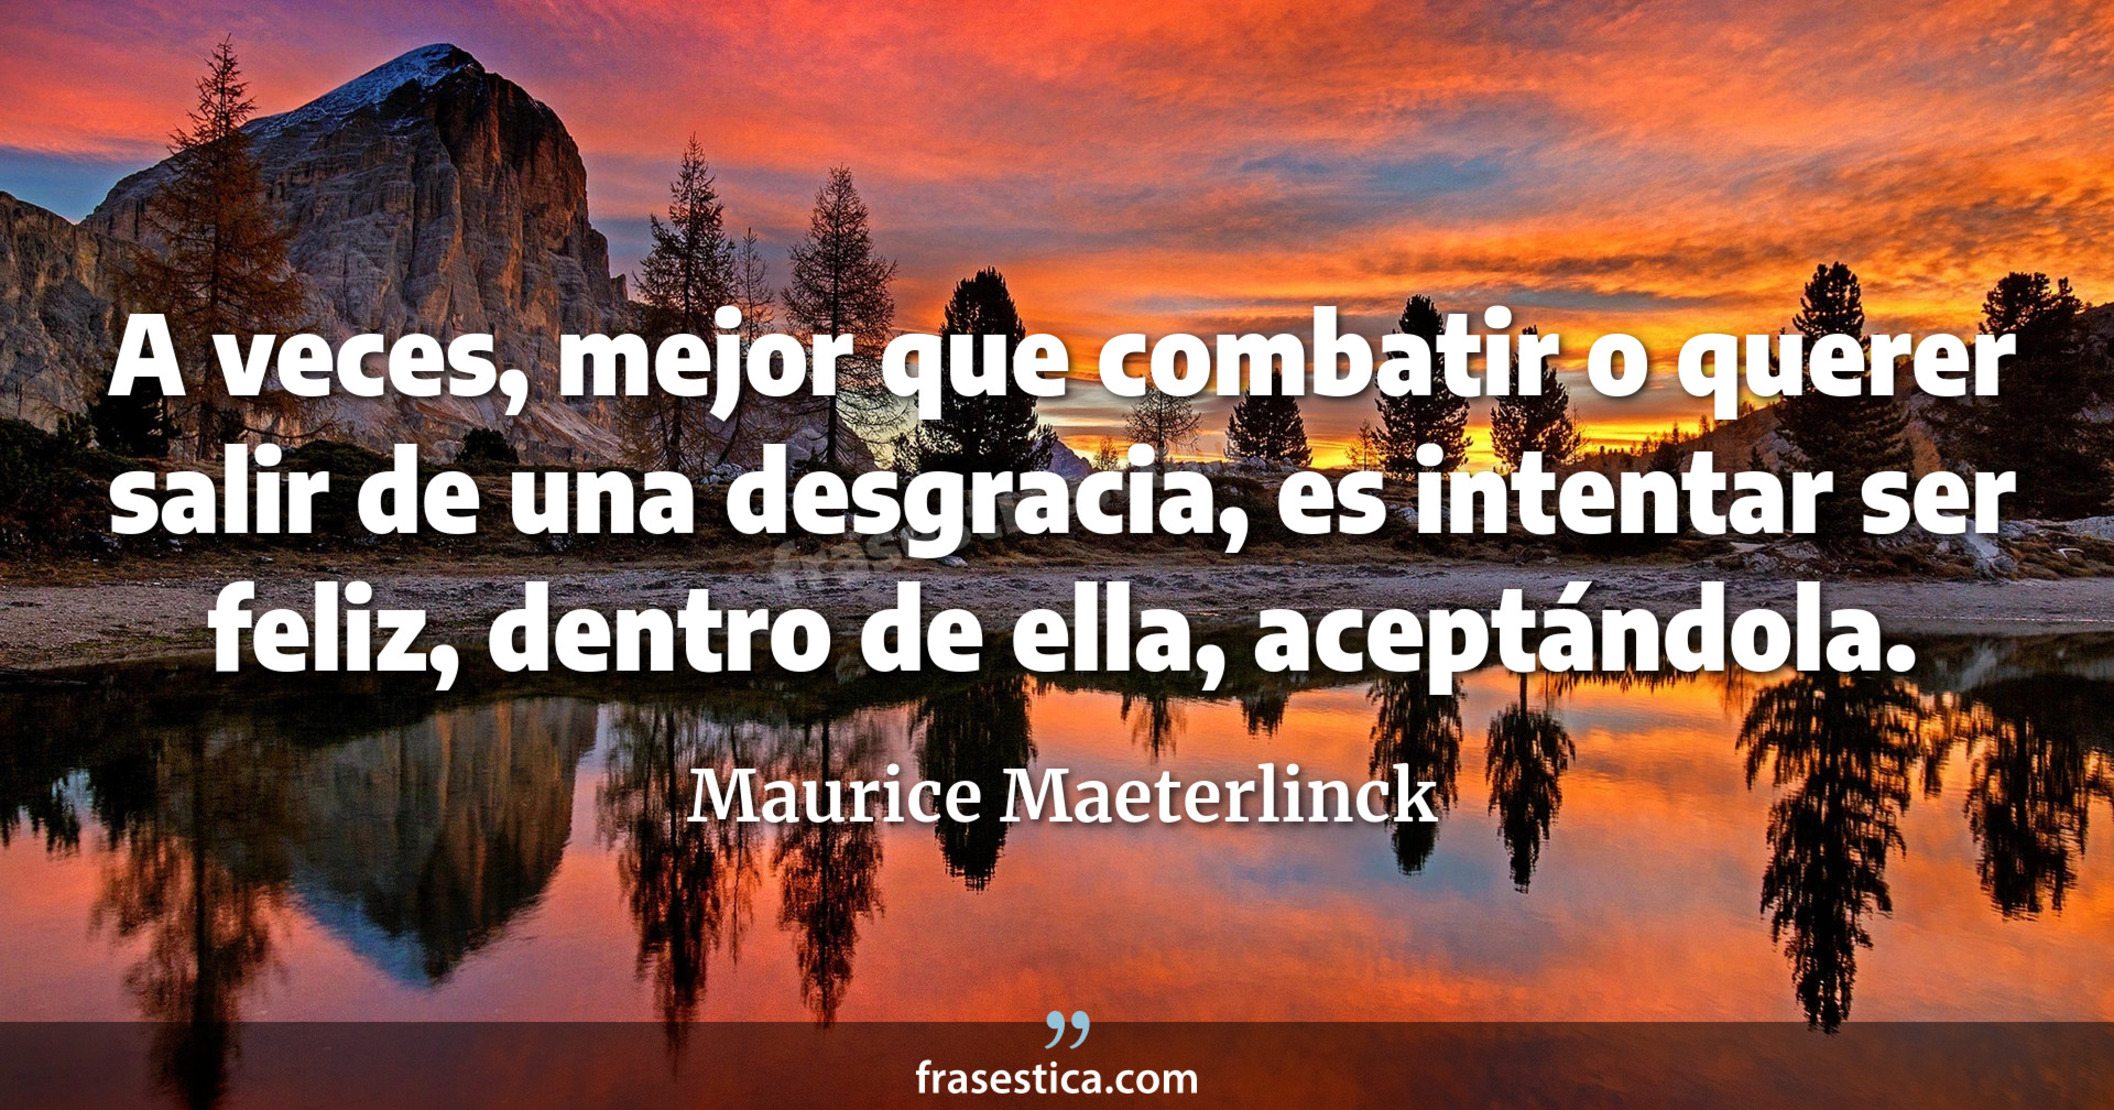 A veces, mejor que combatir o querer salir de una desgracia, es intentar ser feliz, dentro de ella, aceptándola. - Maurice Maeterlinck